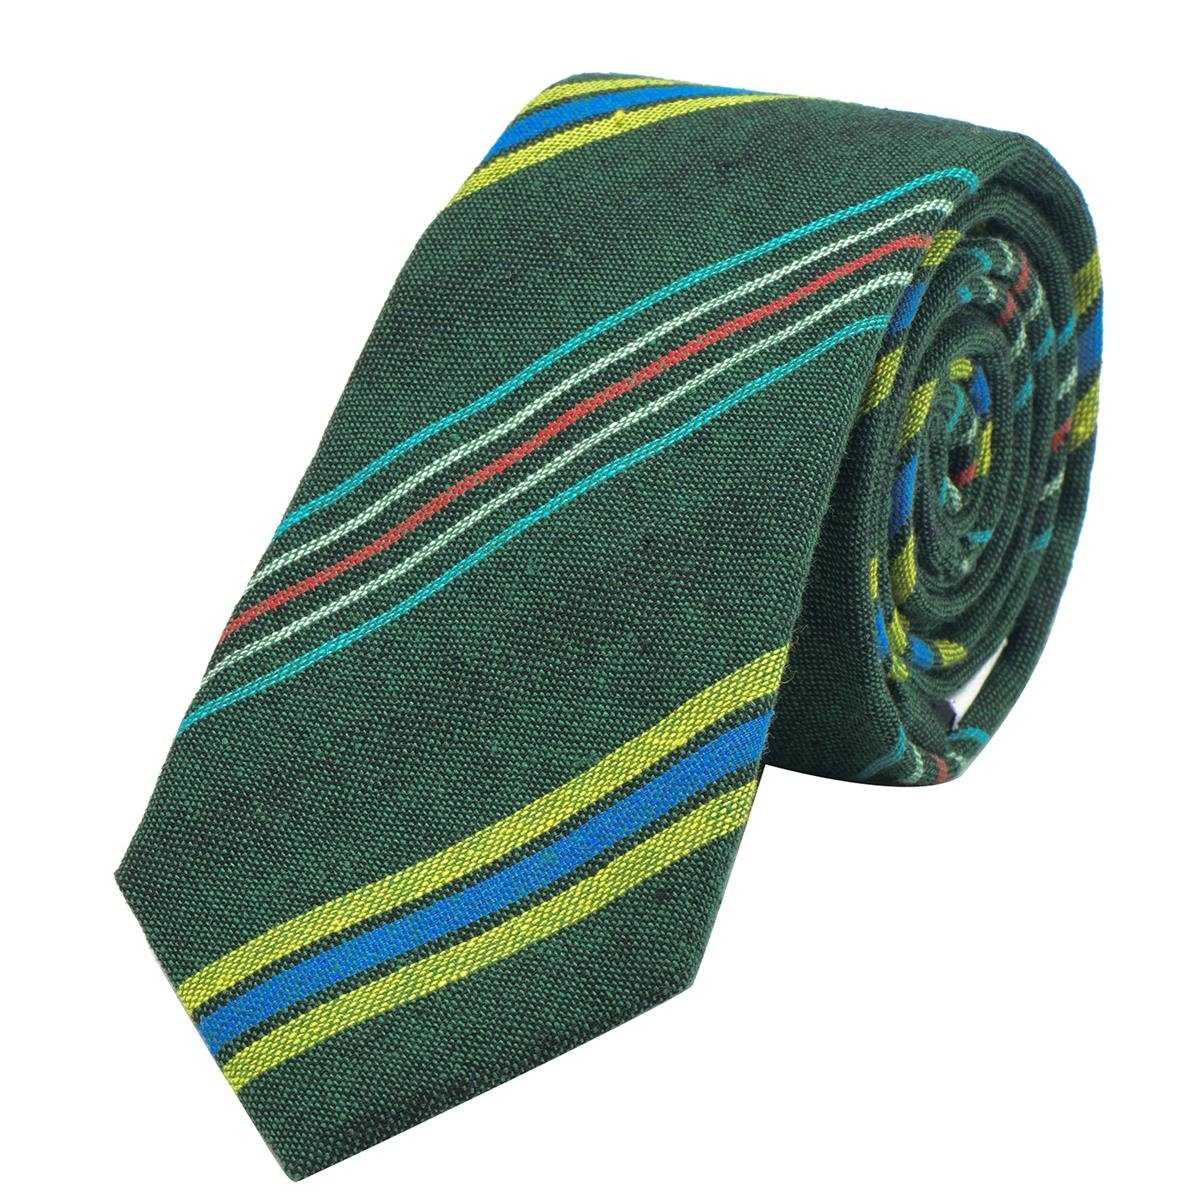 DonDon Krawatte Herren Krawatte 6 cm mit Karos oder Streifen (Packung, 1-St., 1x Krawatte) Baumwolle, kariert oder gestreift, für Büro oder festliche Veranstaltungen grün gestreift